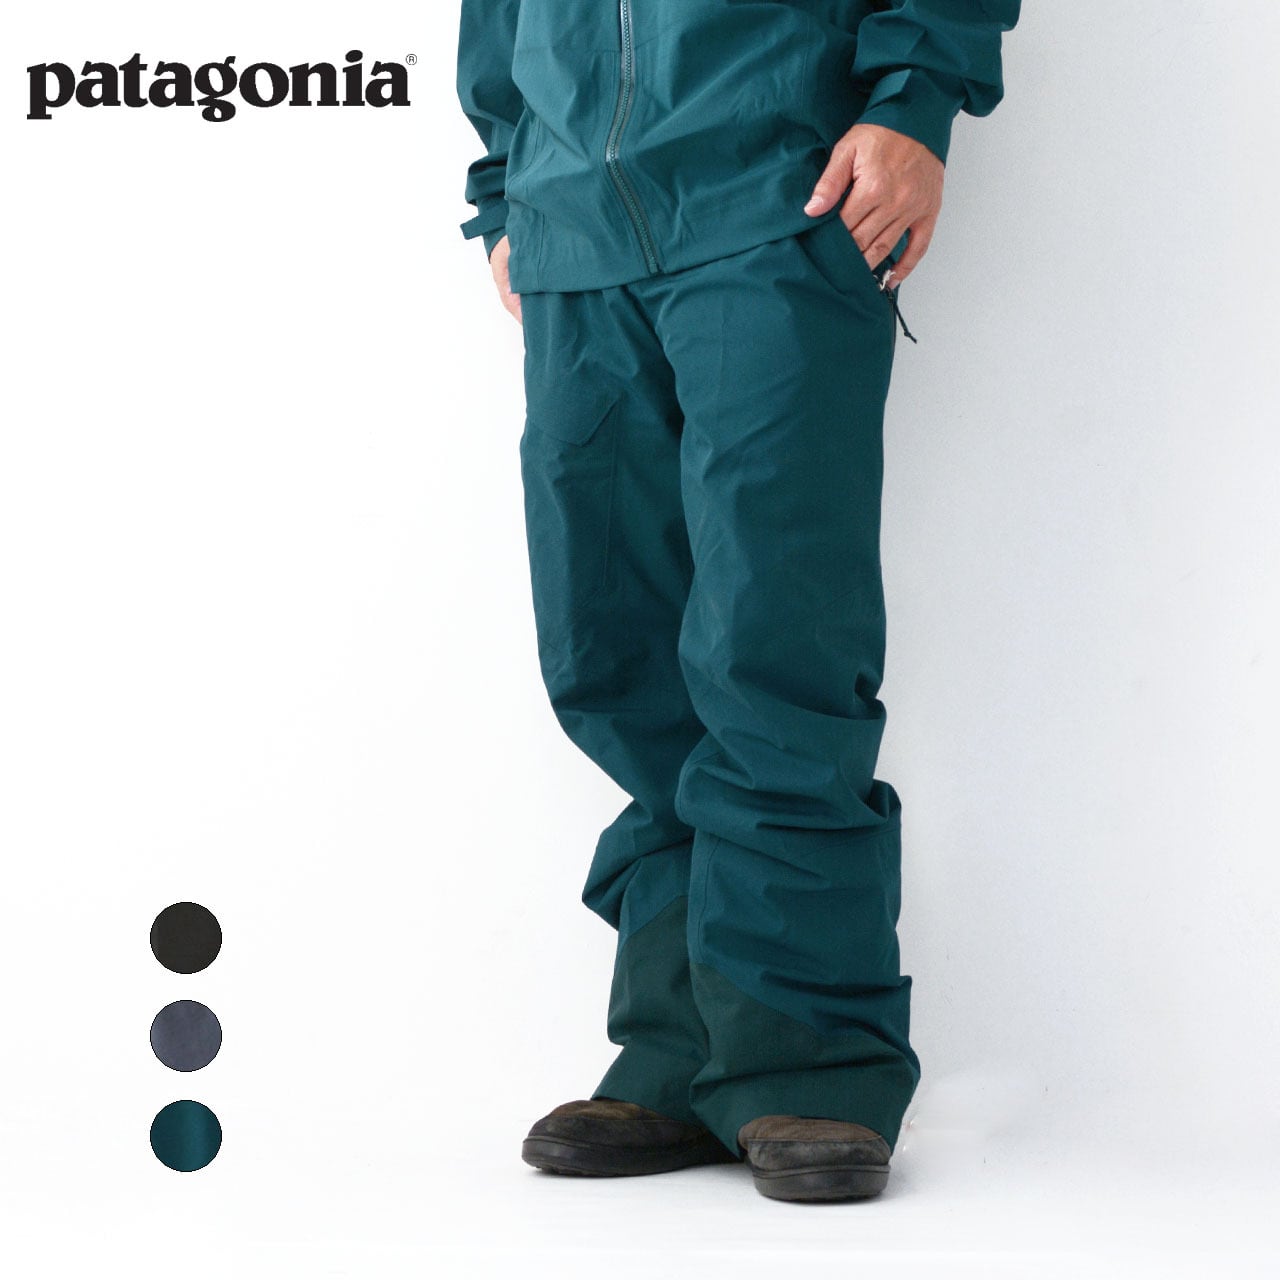 Patagonia [パタゴニア] Men's Powder Bowl Pants-Reg [31488 